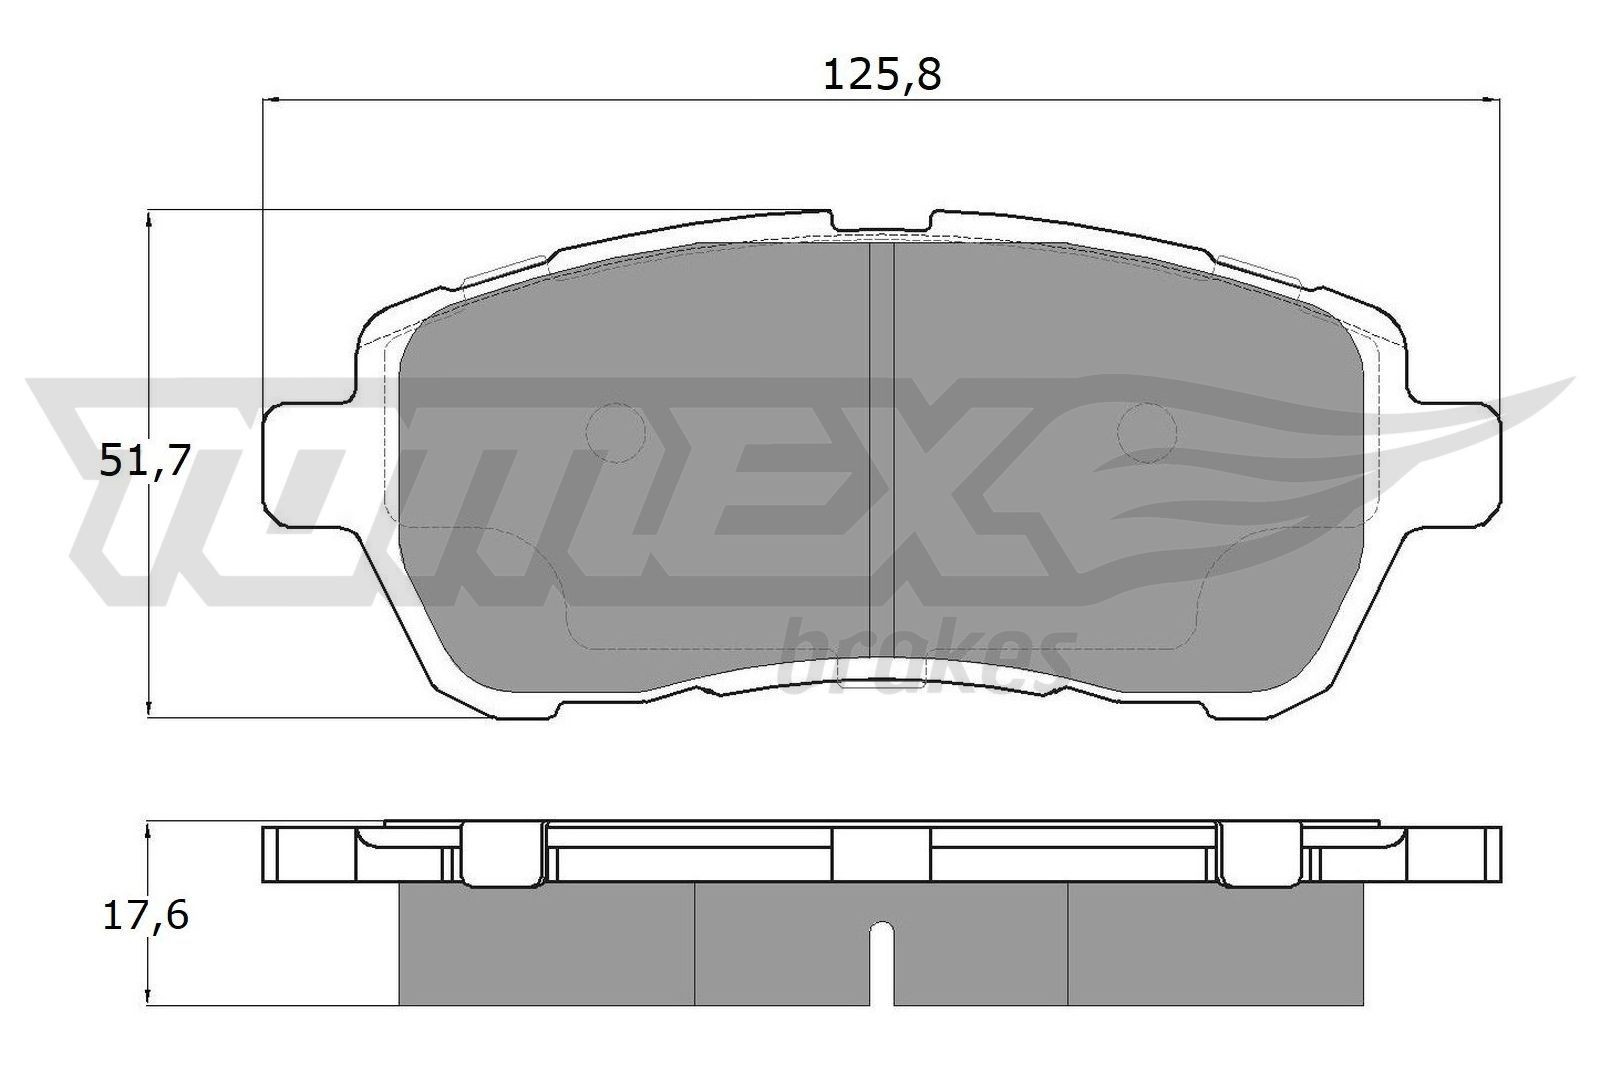 TOMEX brakes Bremsklötze Ford TX 17-95 in Original Qualität